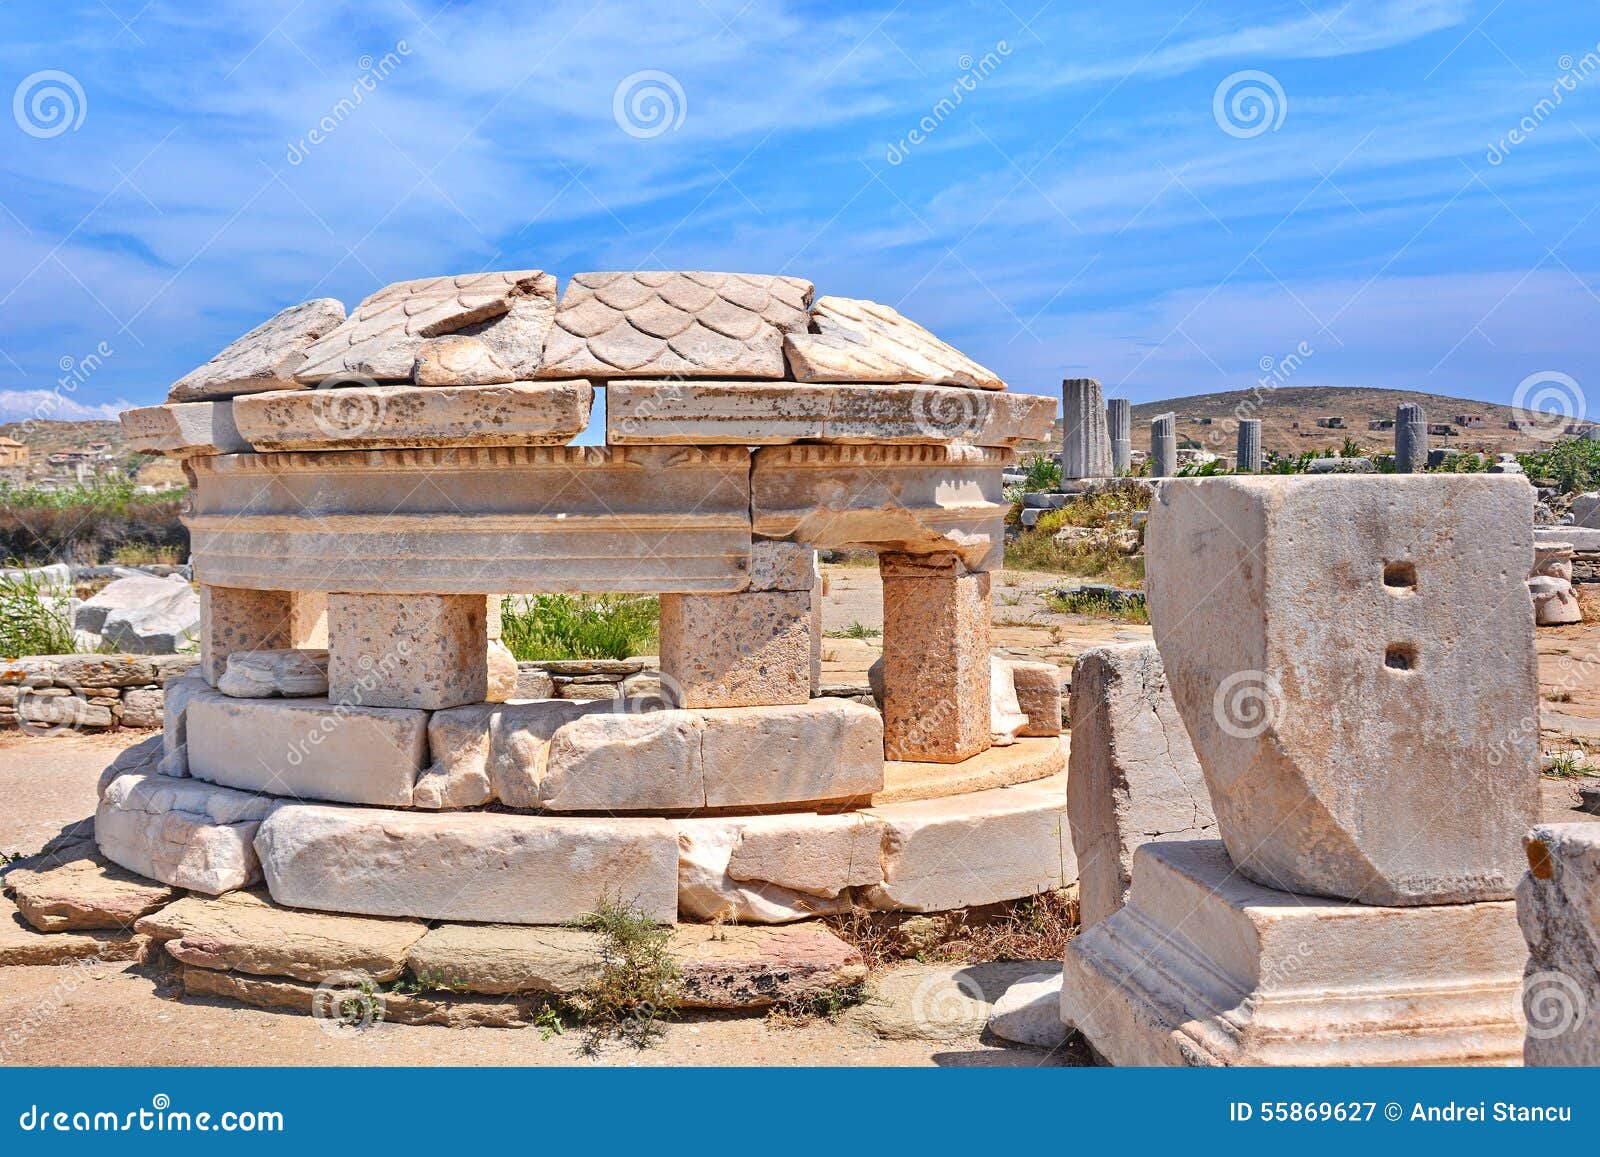 ancient delos ruins, greece